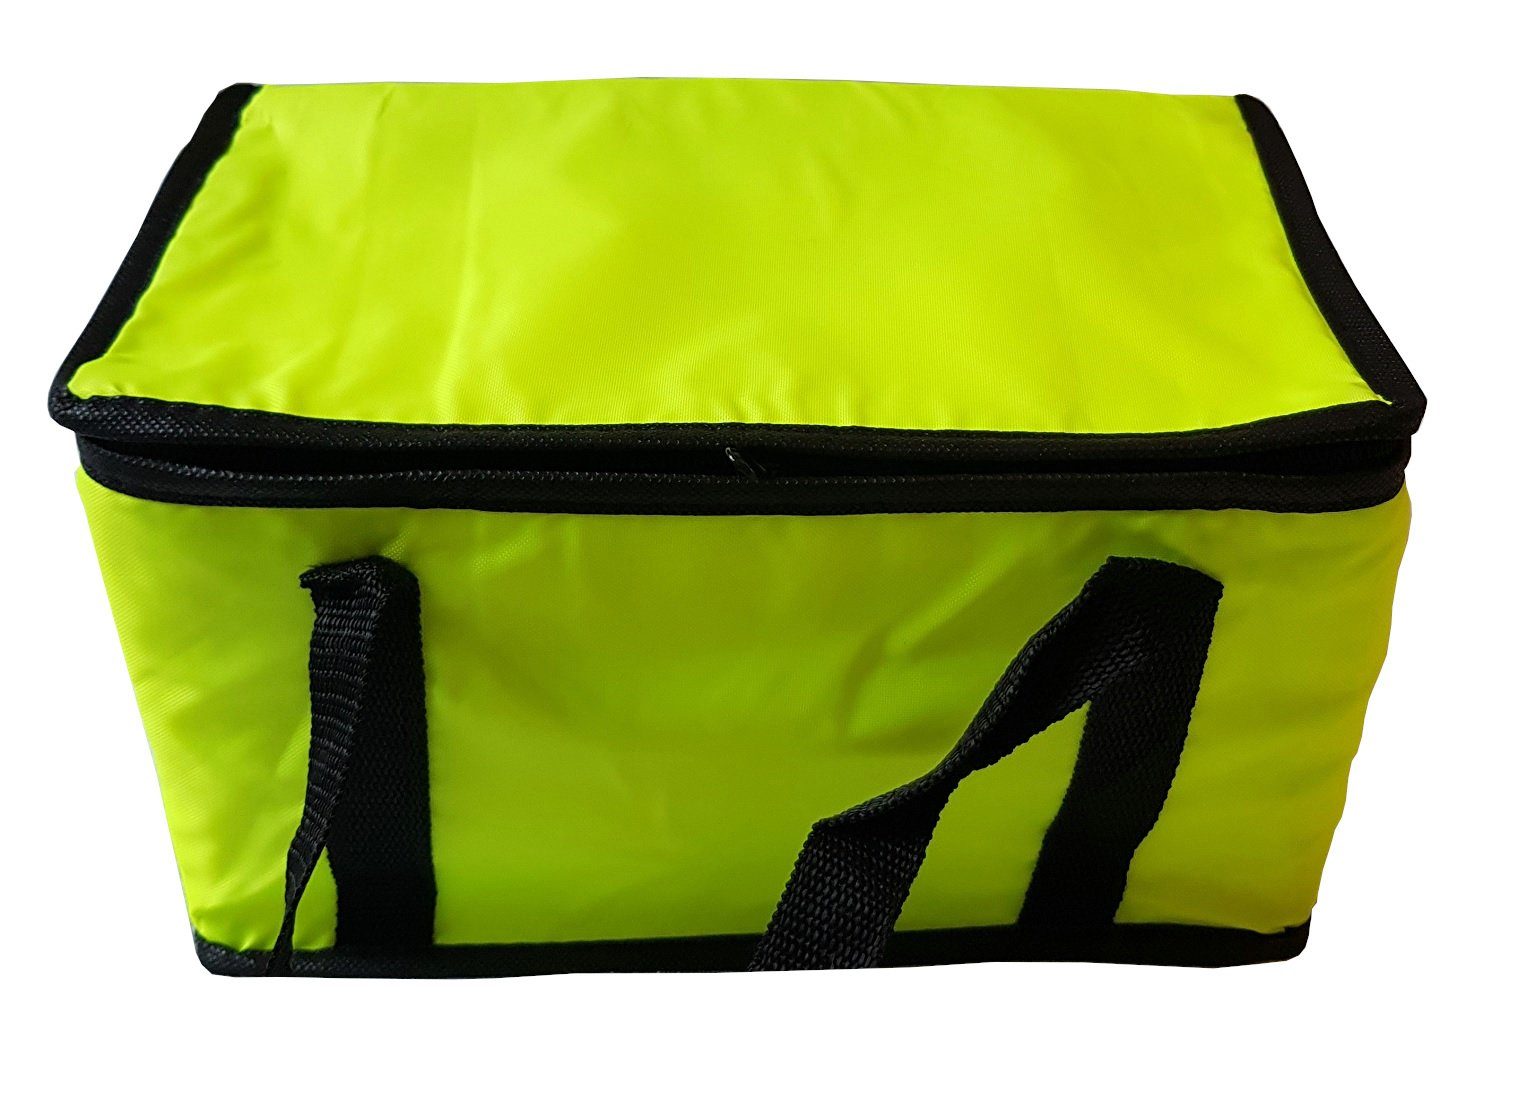 Einkaufstasche Picknicktasche Isoliertasche Gelb Provance Kühlbox 9,5L Kühltasche Kühltasche